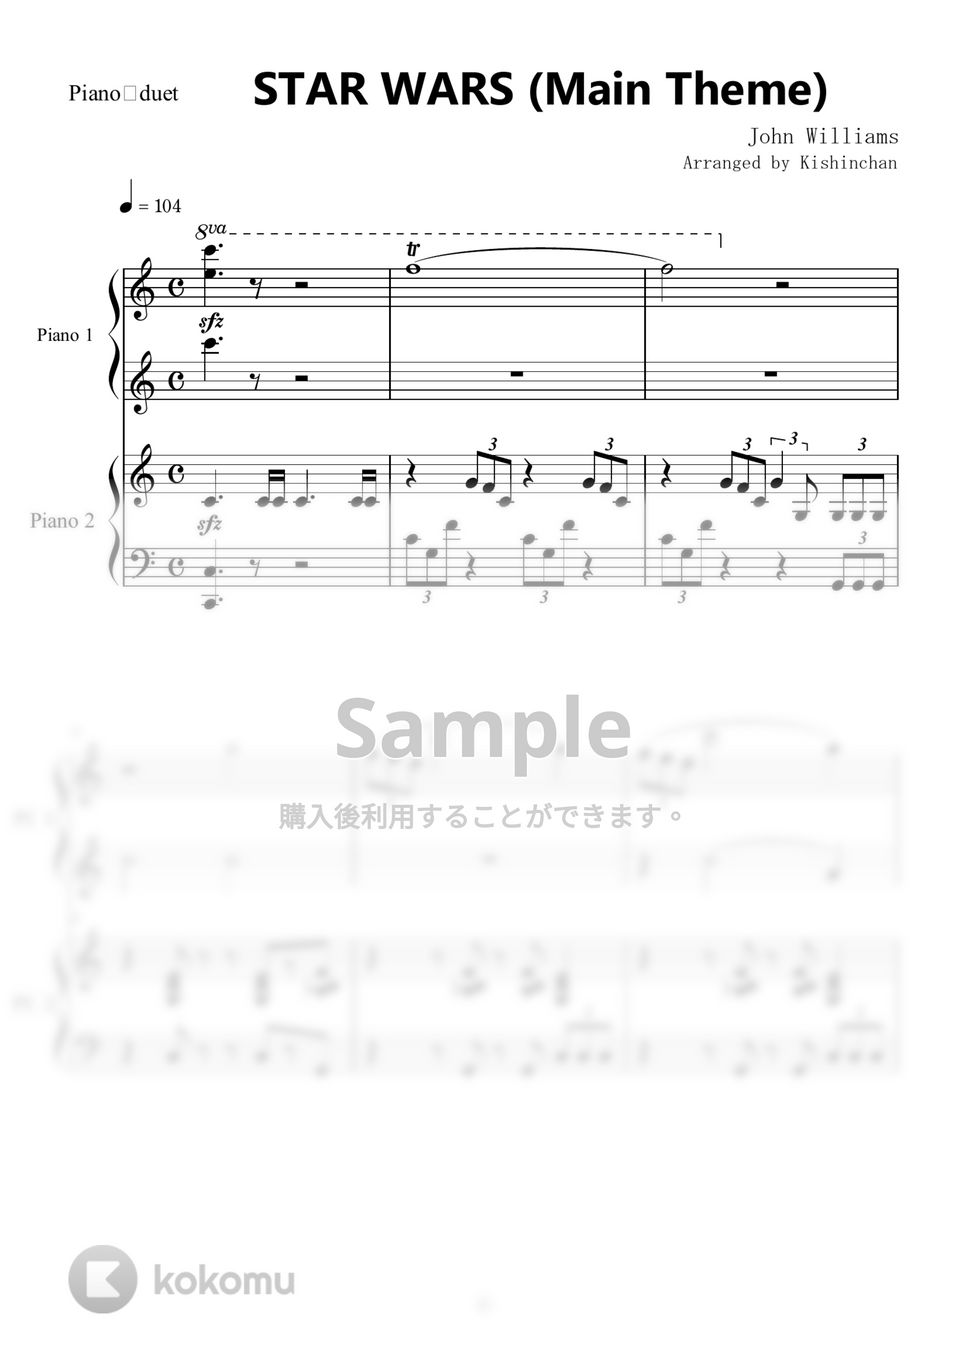 ジョン・ウィリアムズ - スター・ウォーズのテーマ　C dur (ピアノ連弾初級) by Kishinchan